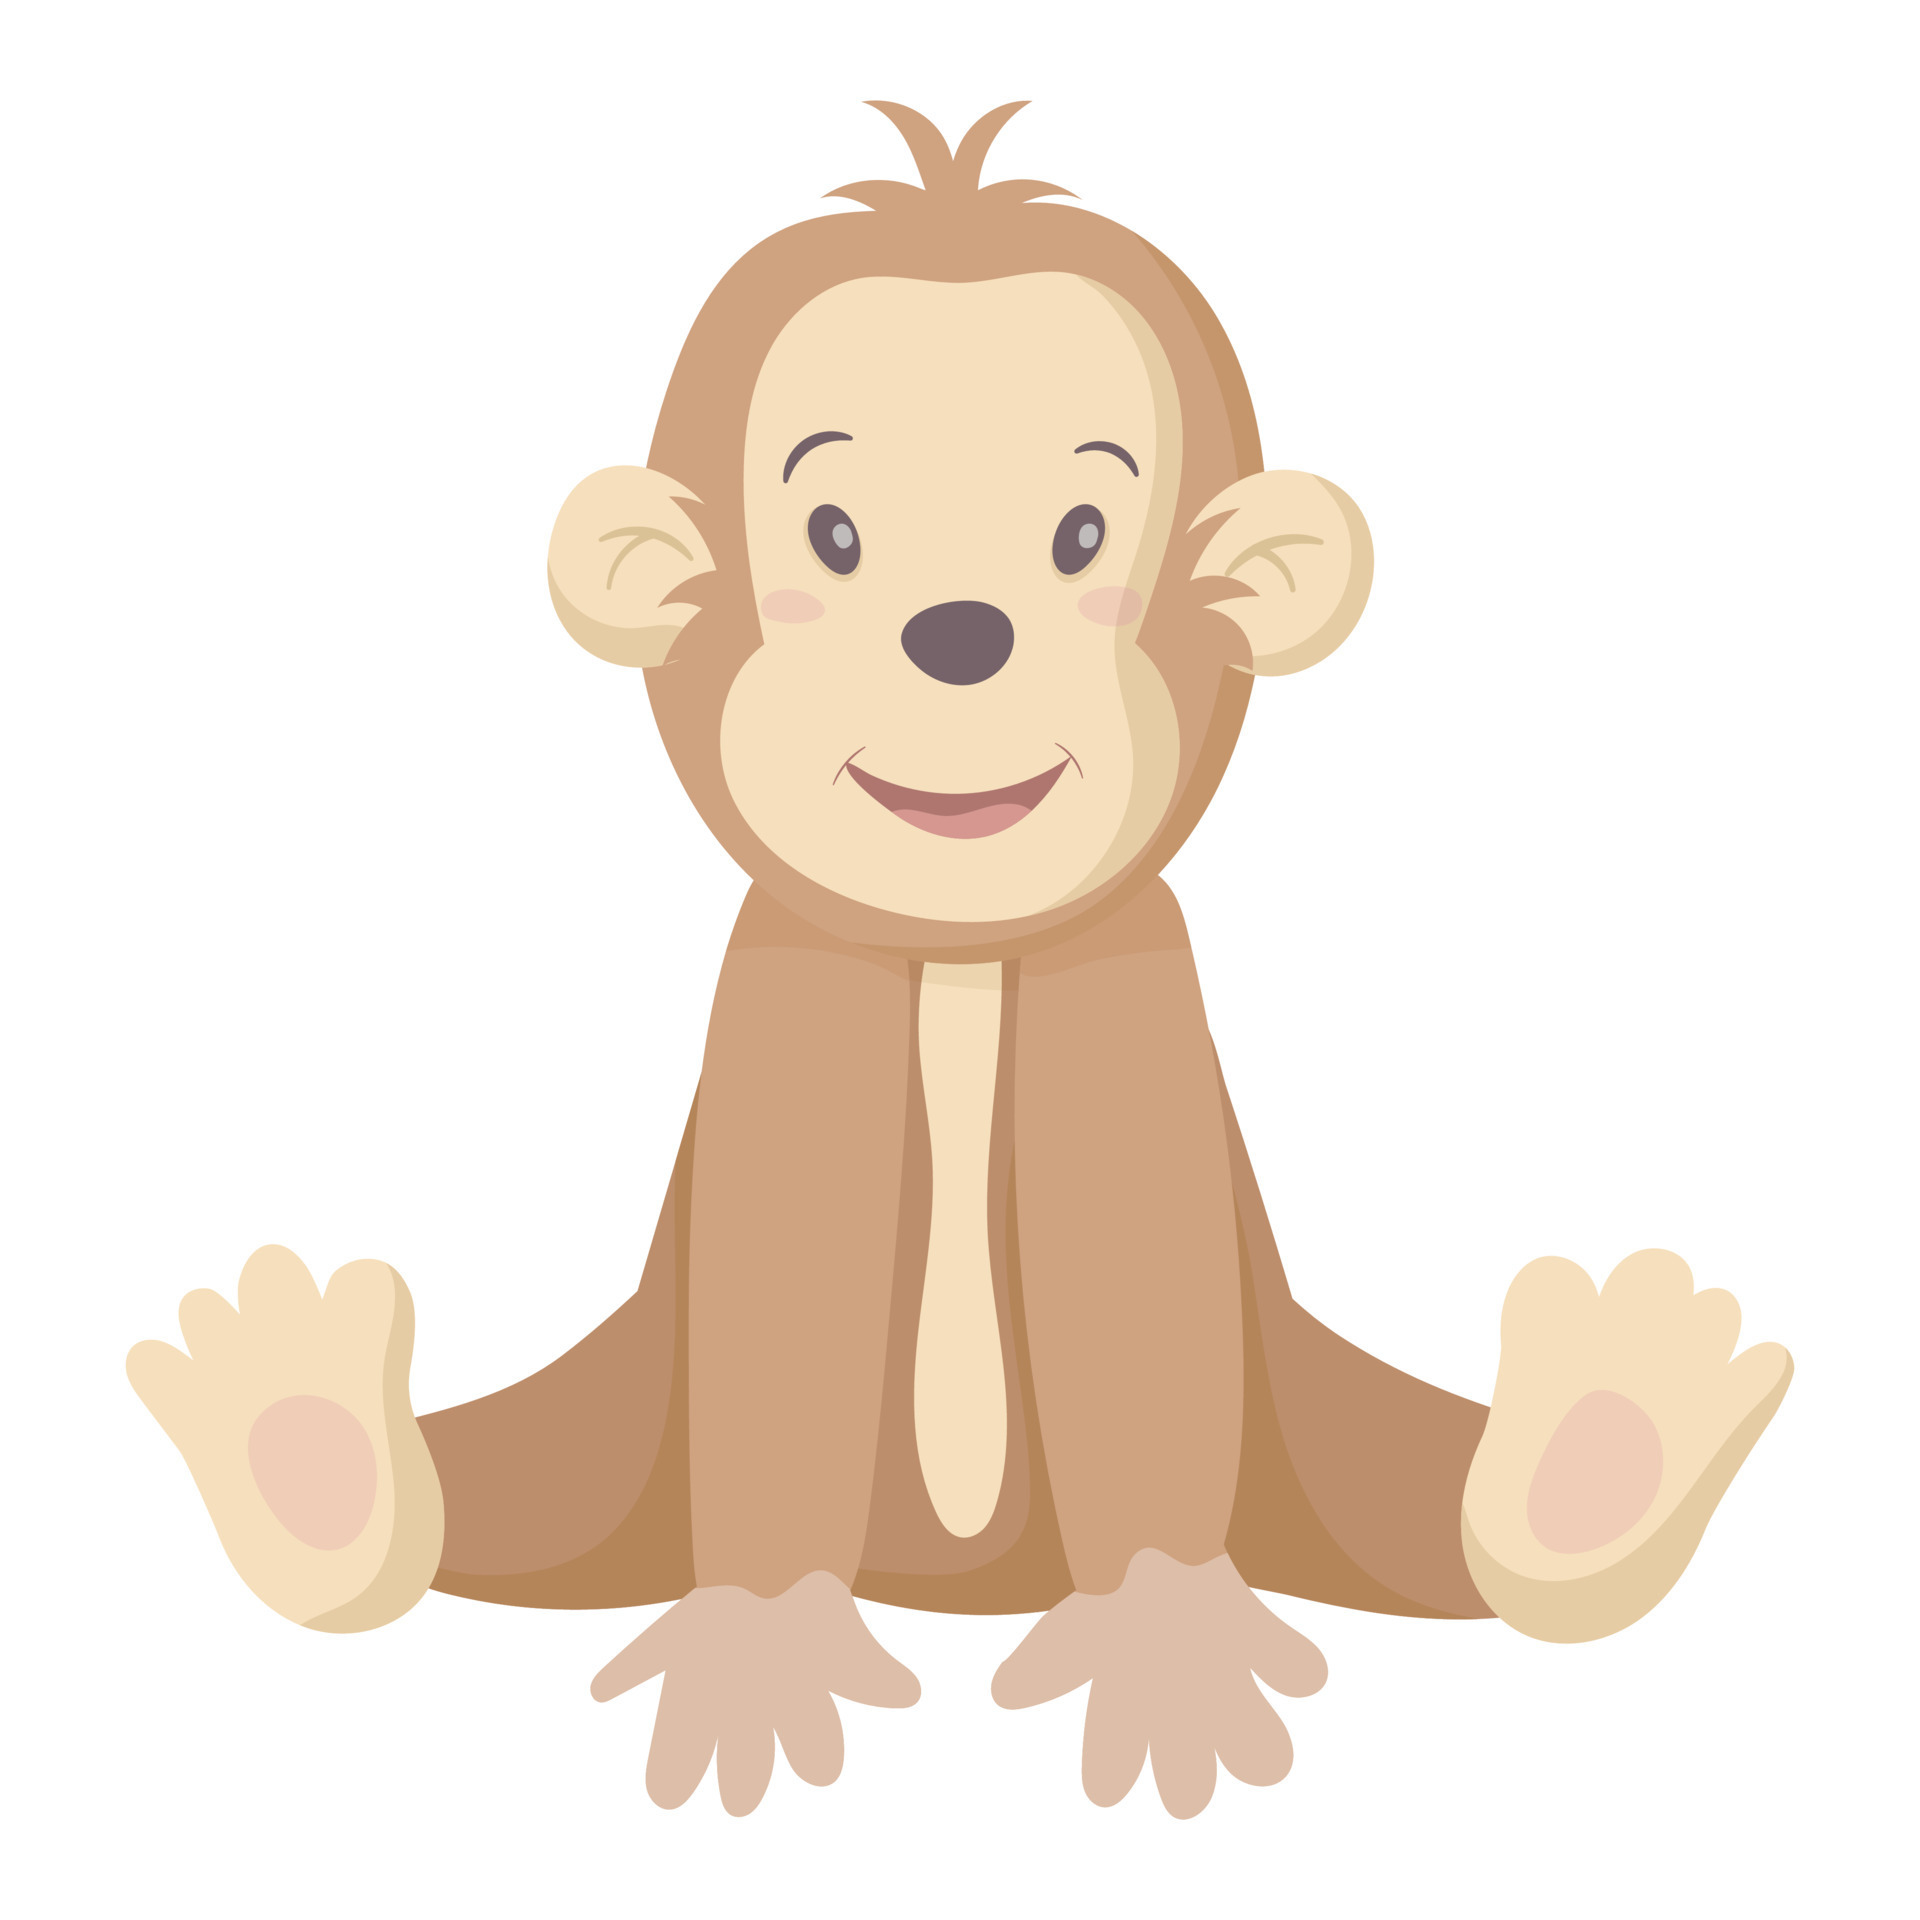 Macaco. Macaco Jovem E Bonitinho, Isolado Em Fundo Branco. Personagem De Desenho  Animado Zoológico. Cartão De Educação Para Crianç Ilustração do Vetor -  Ilustração de alegria, cartoon: 239228999